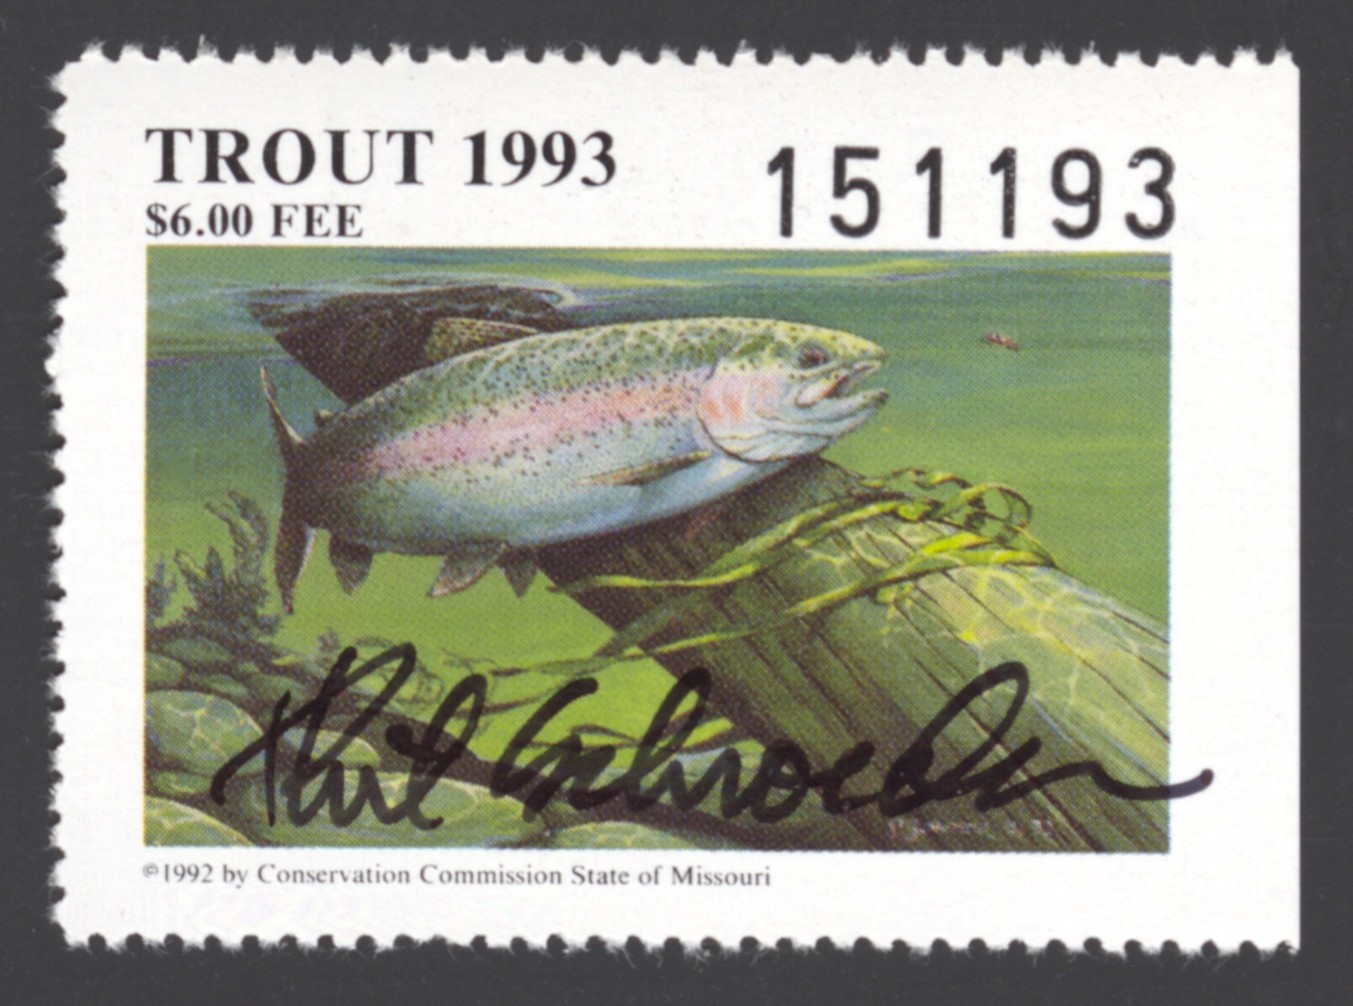 1993 Missouri Missouri Trout Stamp signed by Phil Schroeder